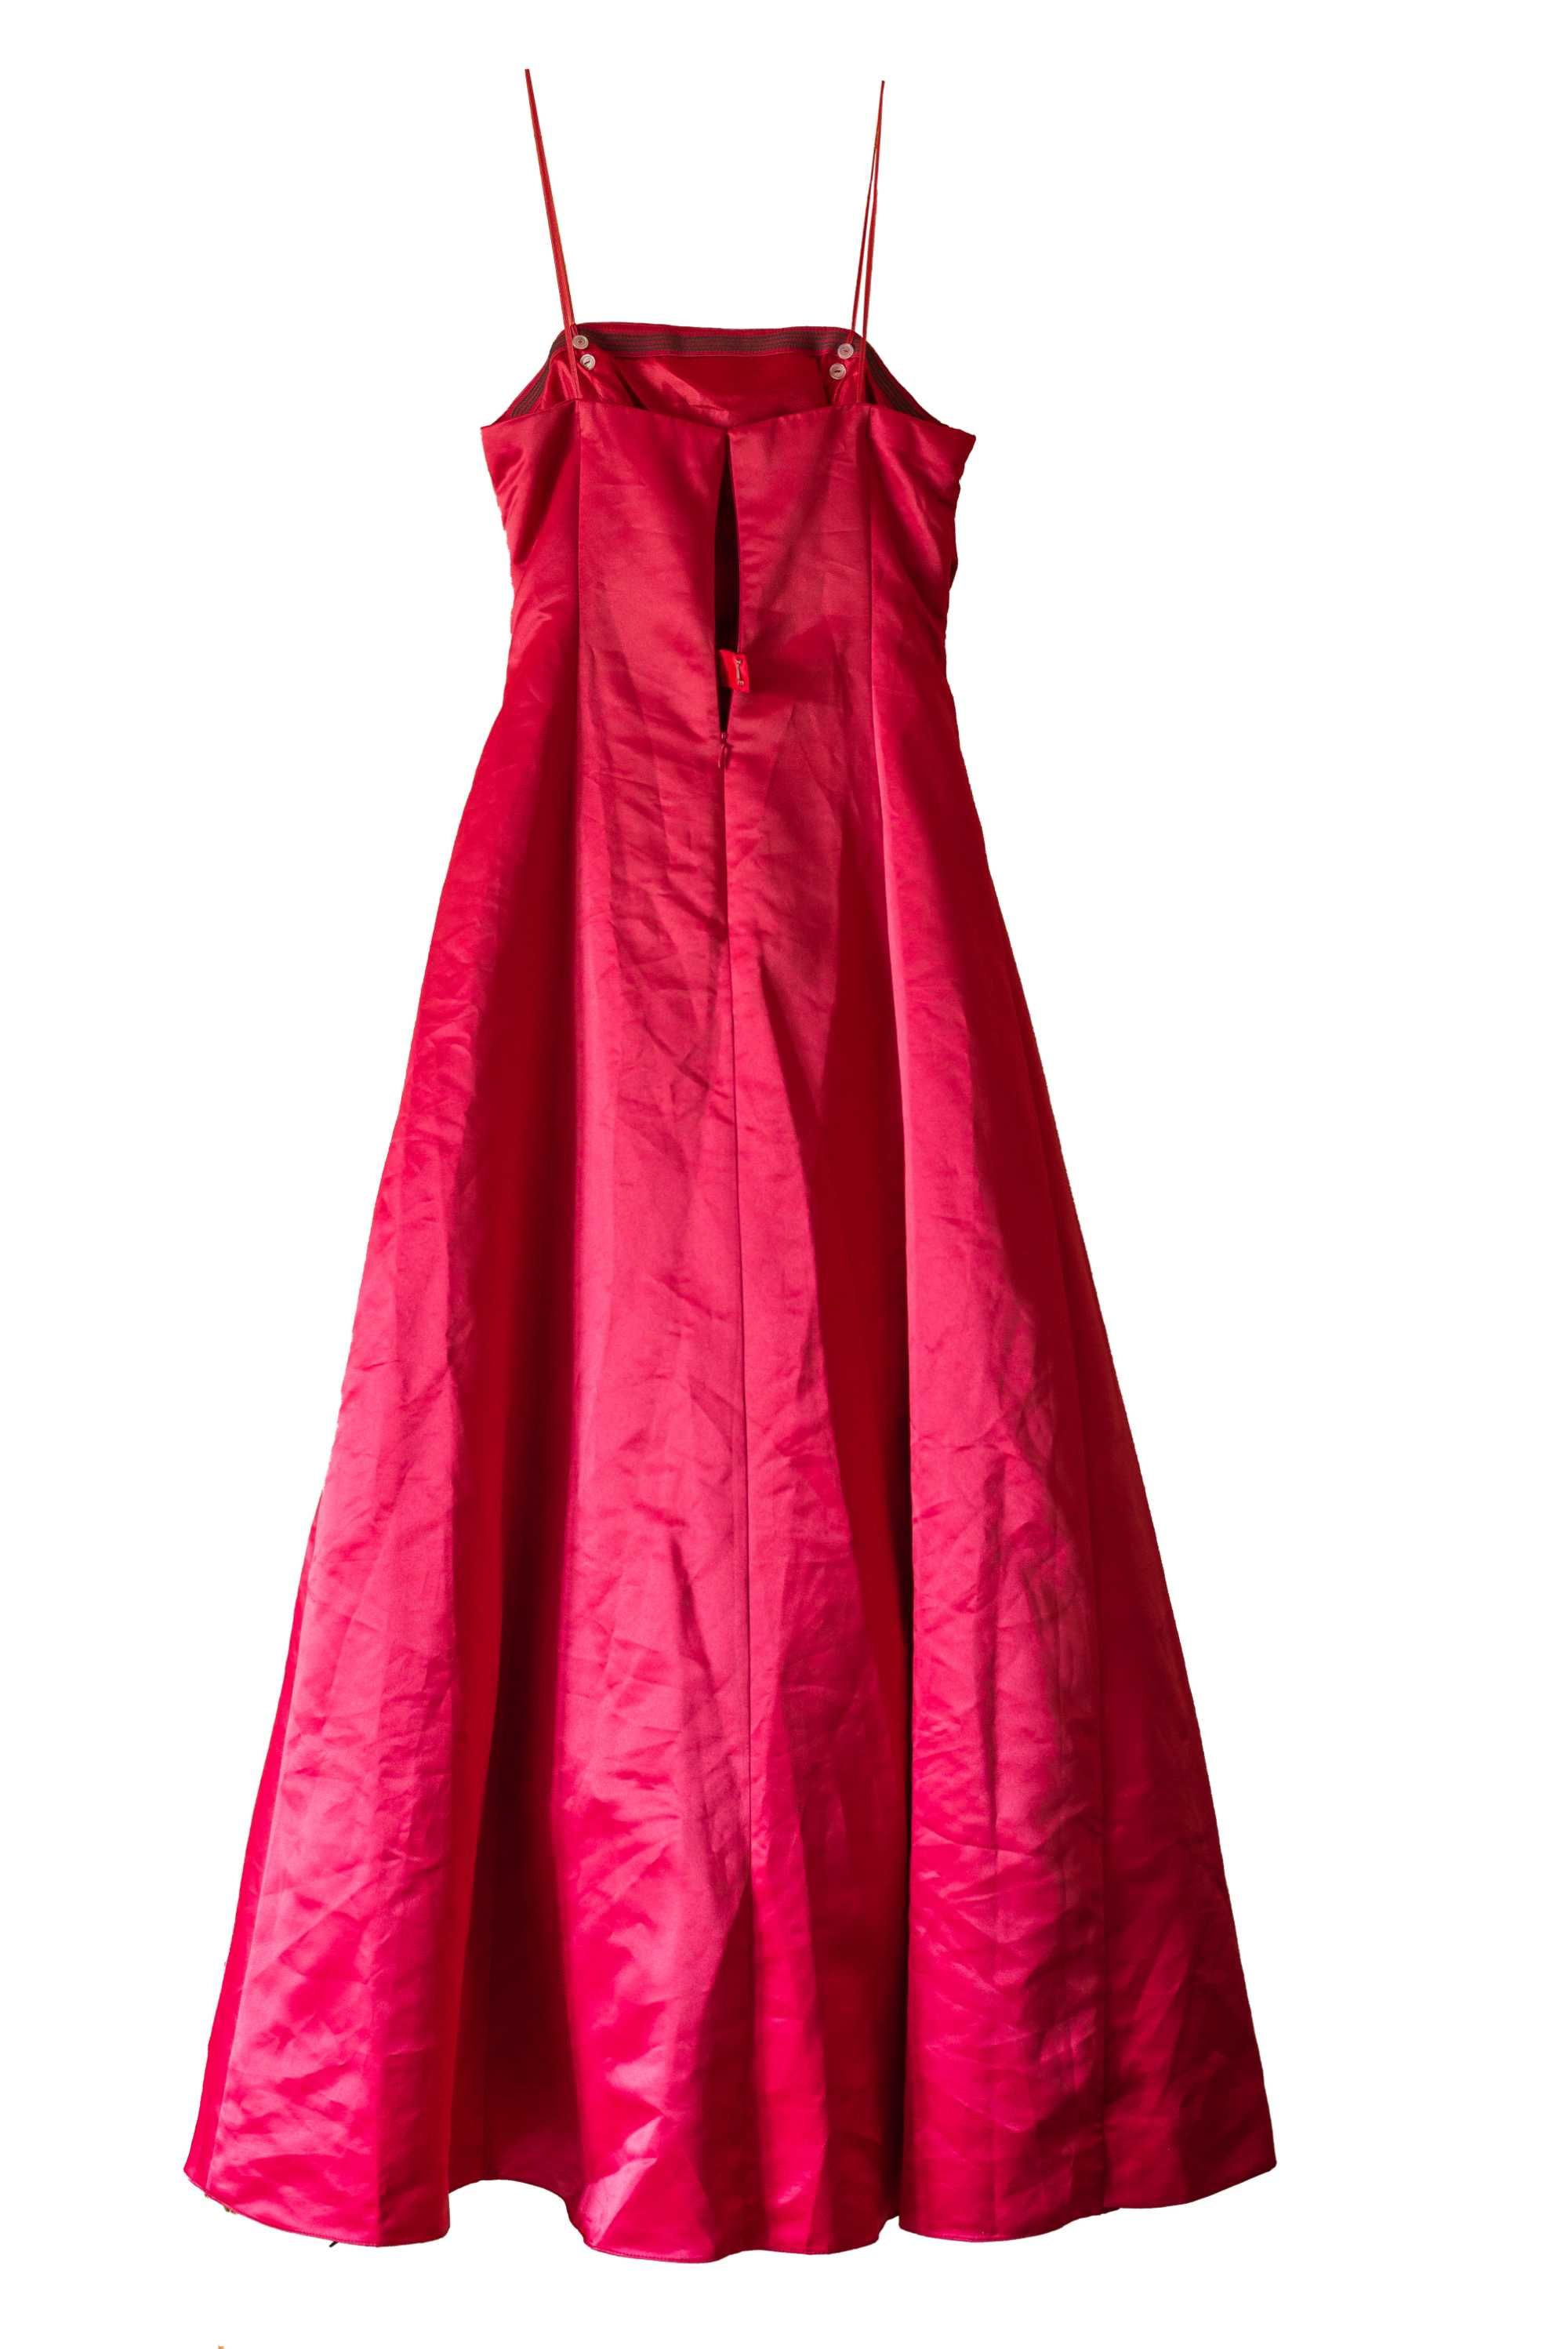 Сукня червона с брошкой, плаття в яскраво червоному кольорі,торг